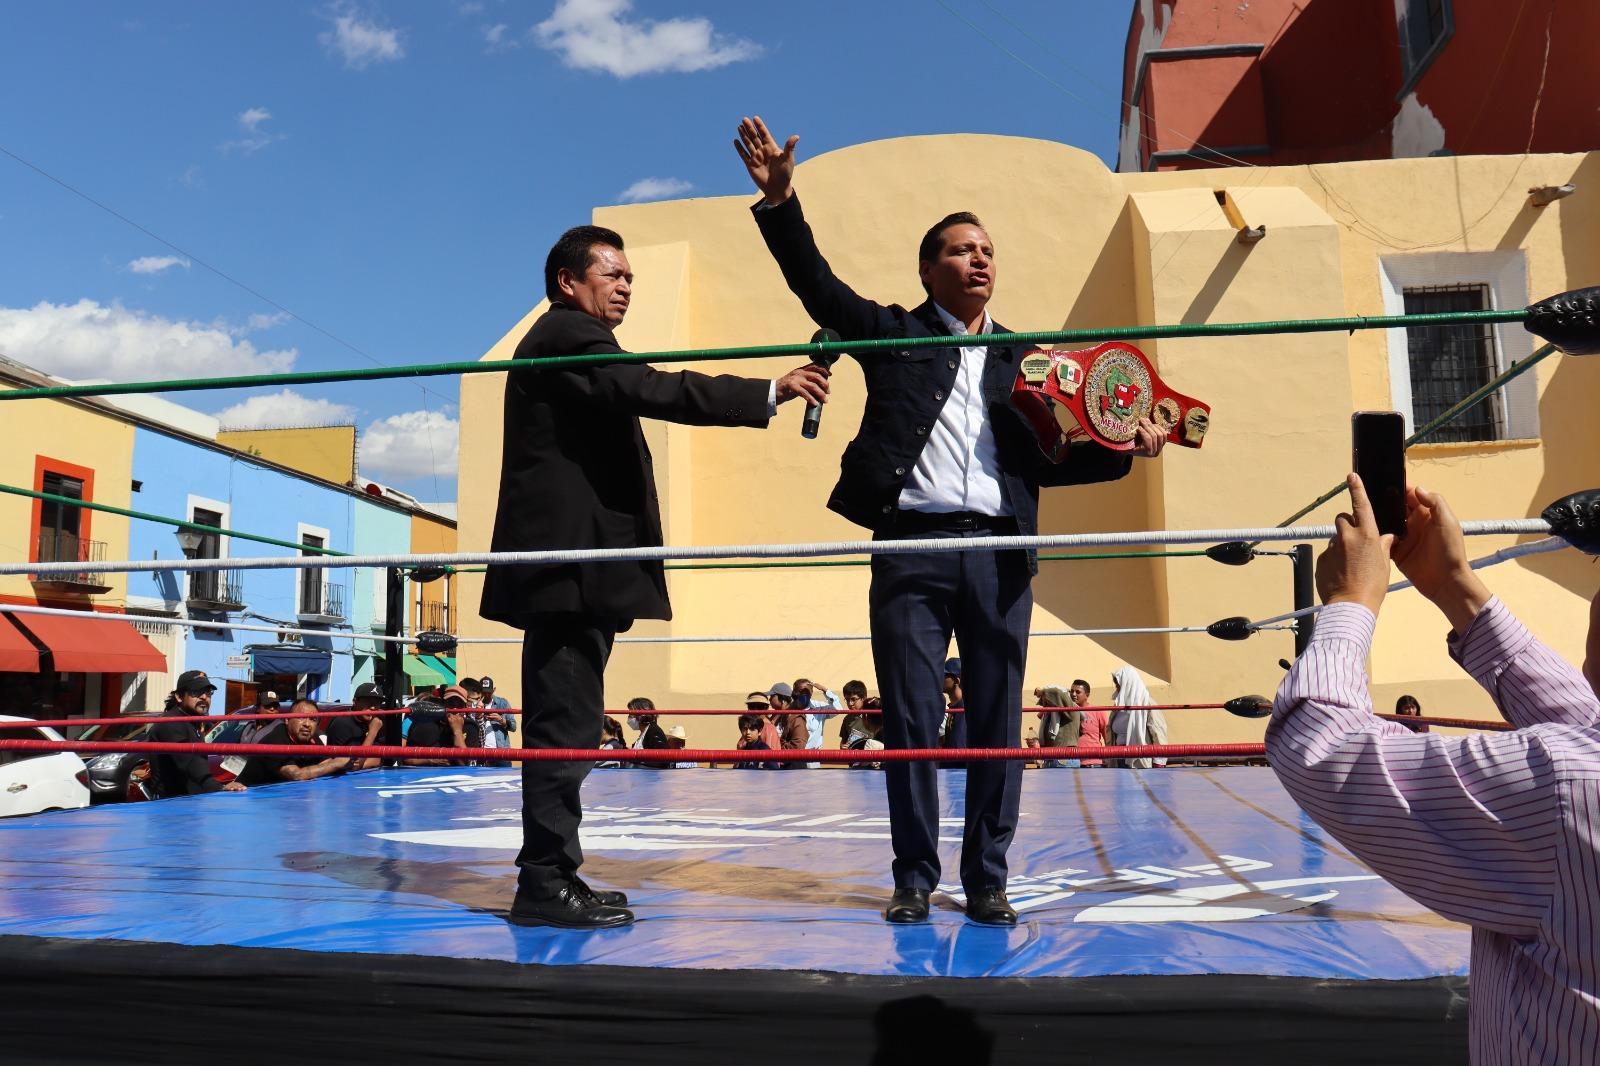 Invita Luis Antonio Herrera a función gratuita de lucha libre independiente en San Gabriel Cuautla